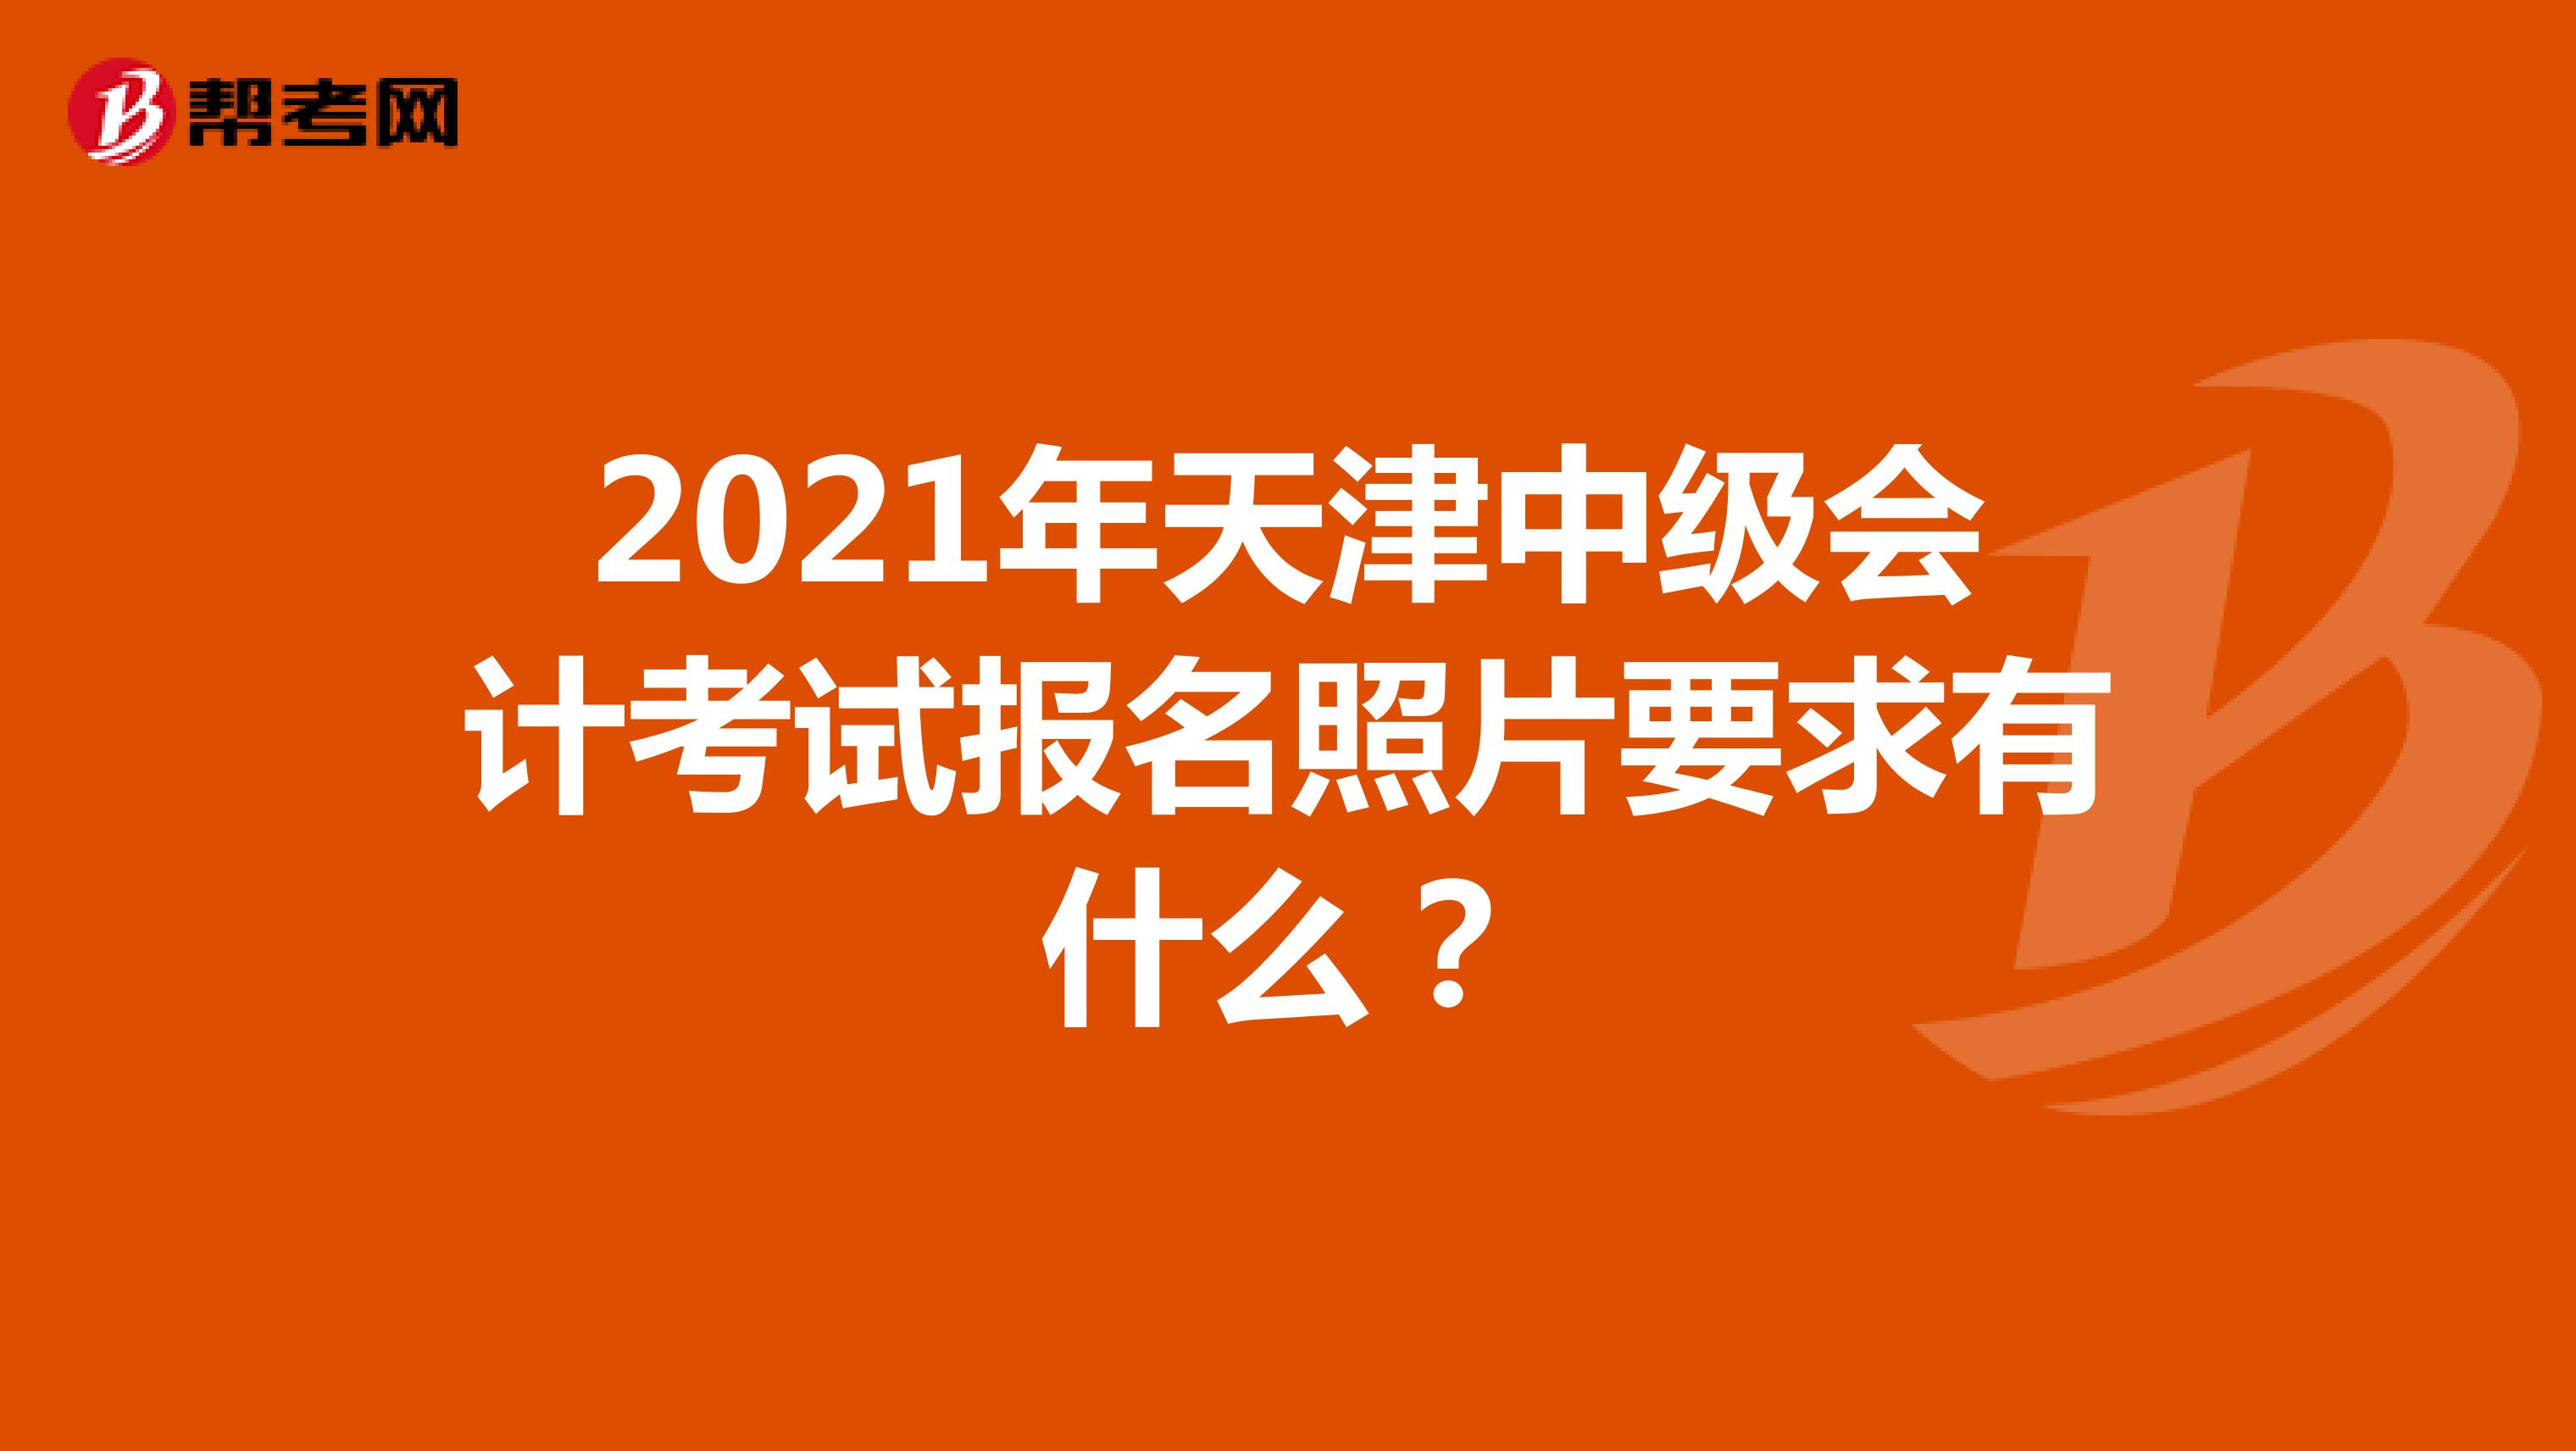 2021年天津中级会计考试报名照片要求有什么？